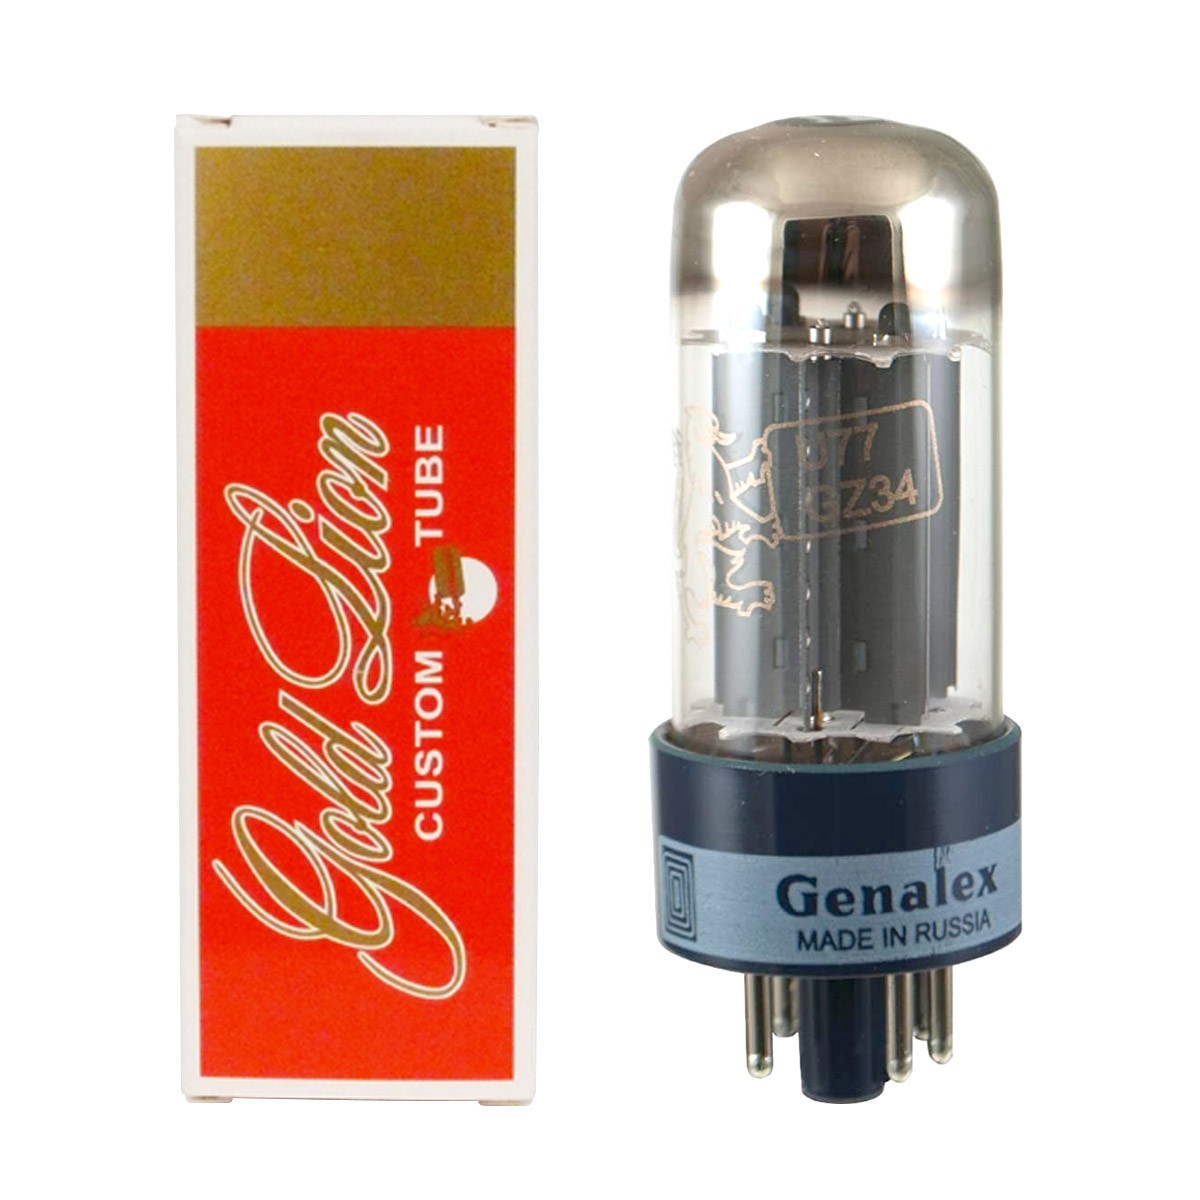 Genalex Gold Lion 5AR4/GZ34/U77 